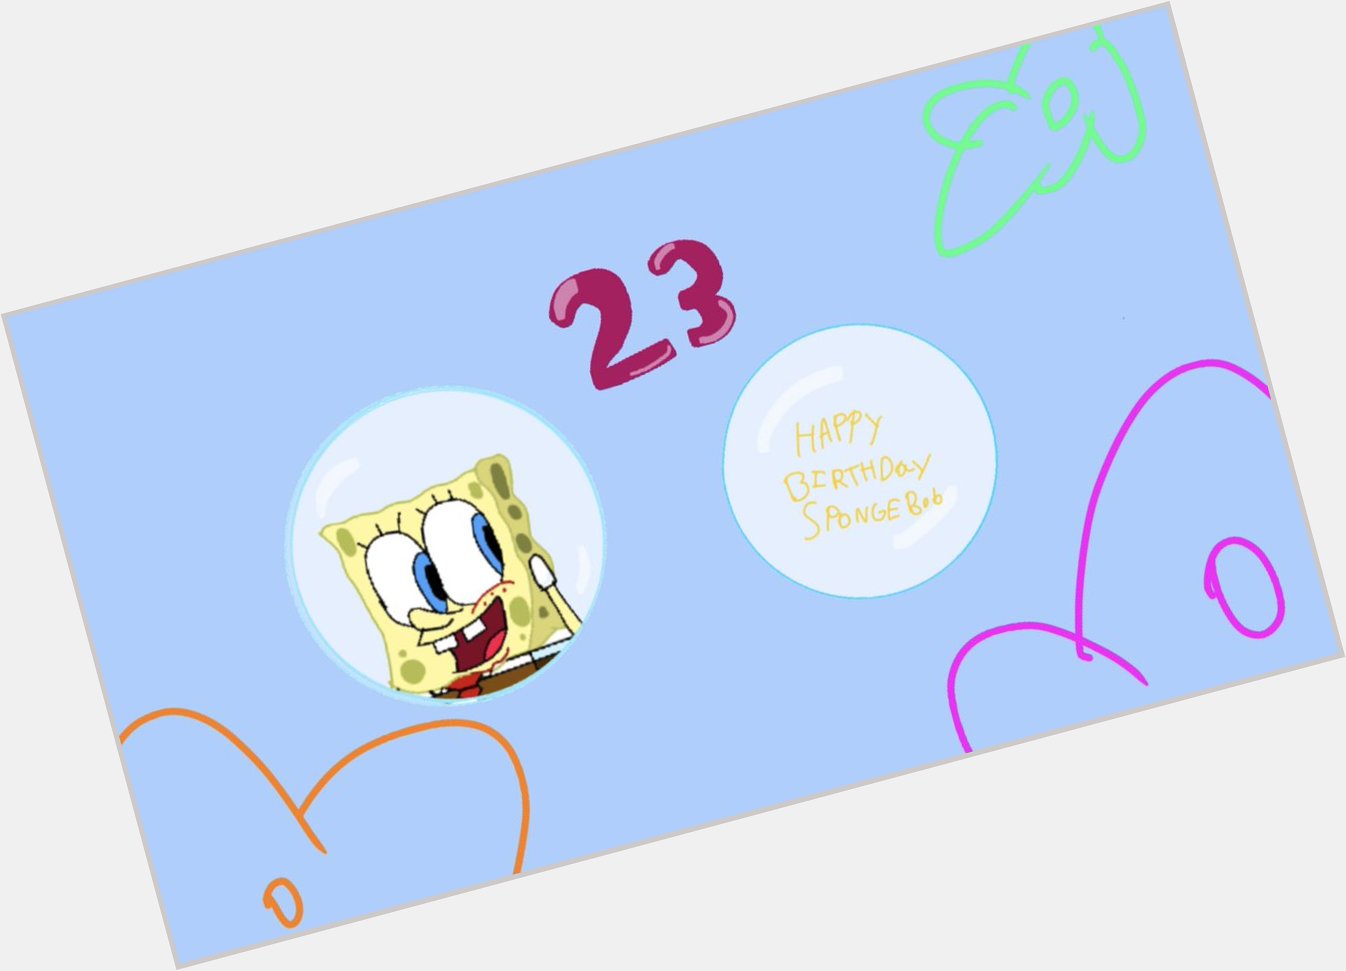 Happy birthday SpongeBob SquarePants 